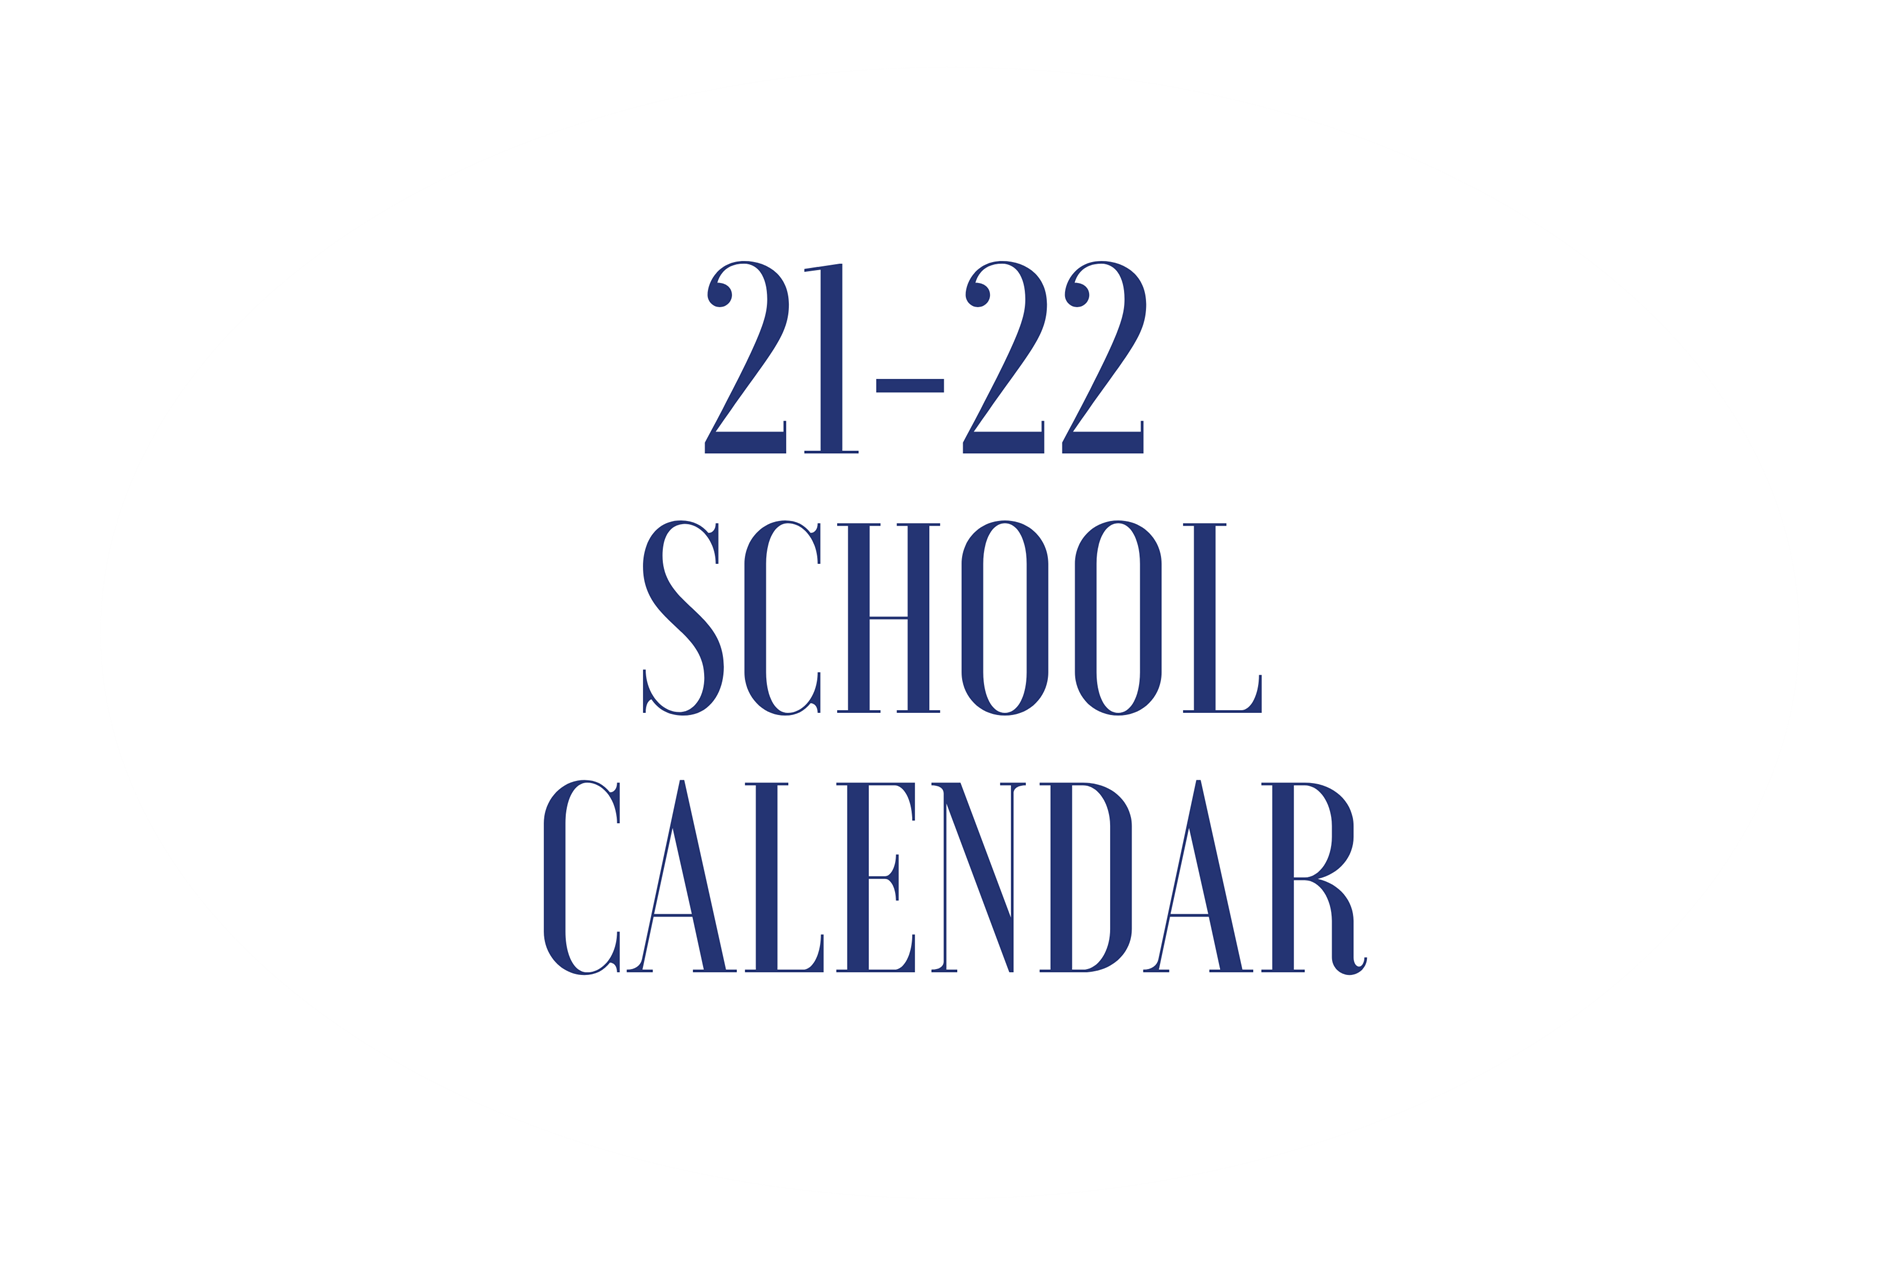 jersey city global charter school calendar